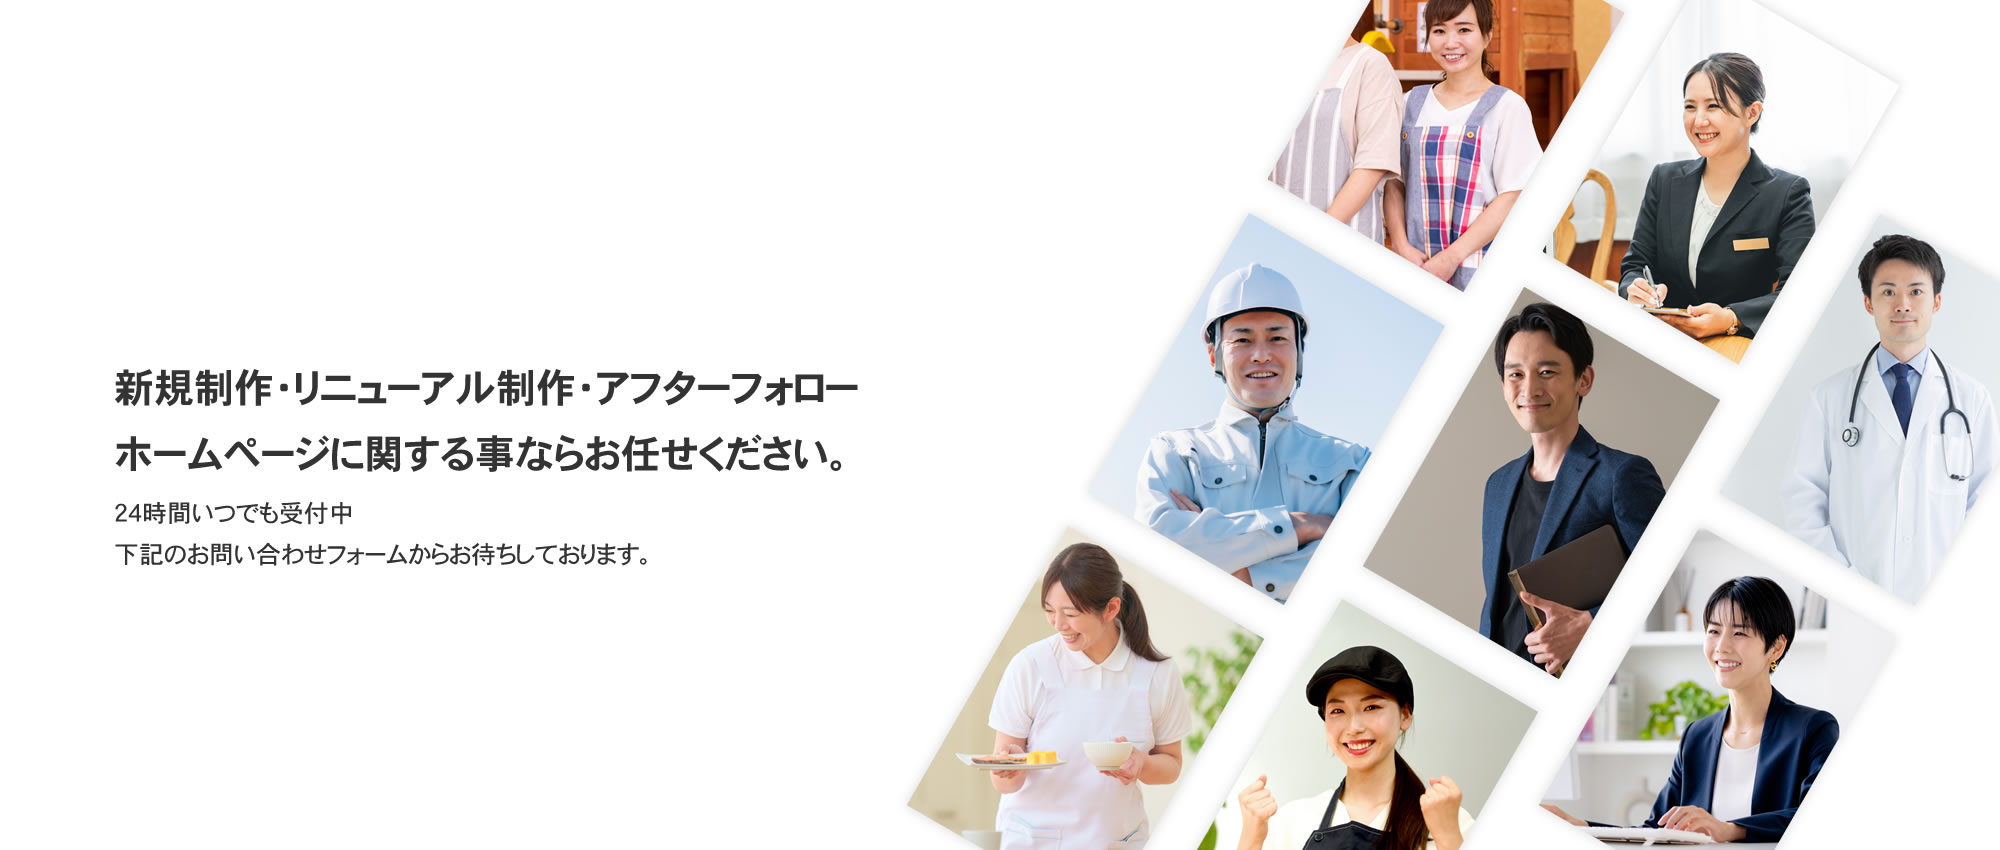 長崎でホームページ制作なら長崎WEBデザイン西野へ|長崎県長崎市のホームページ制作会社WEBデザイン西野